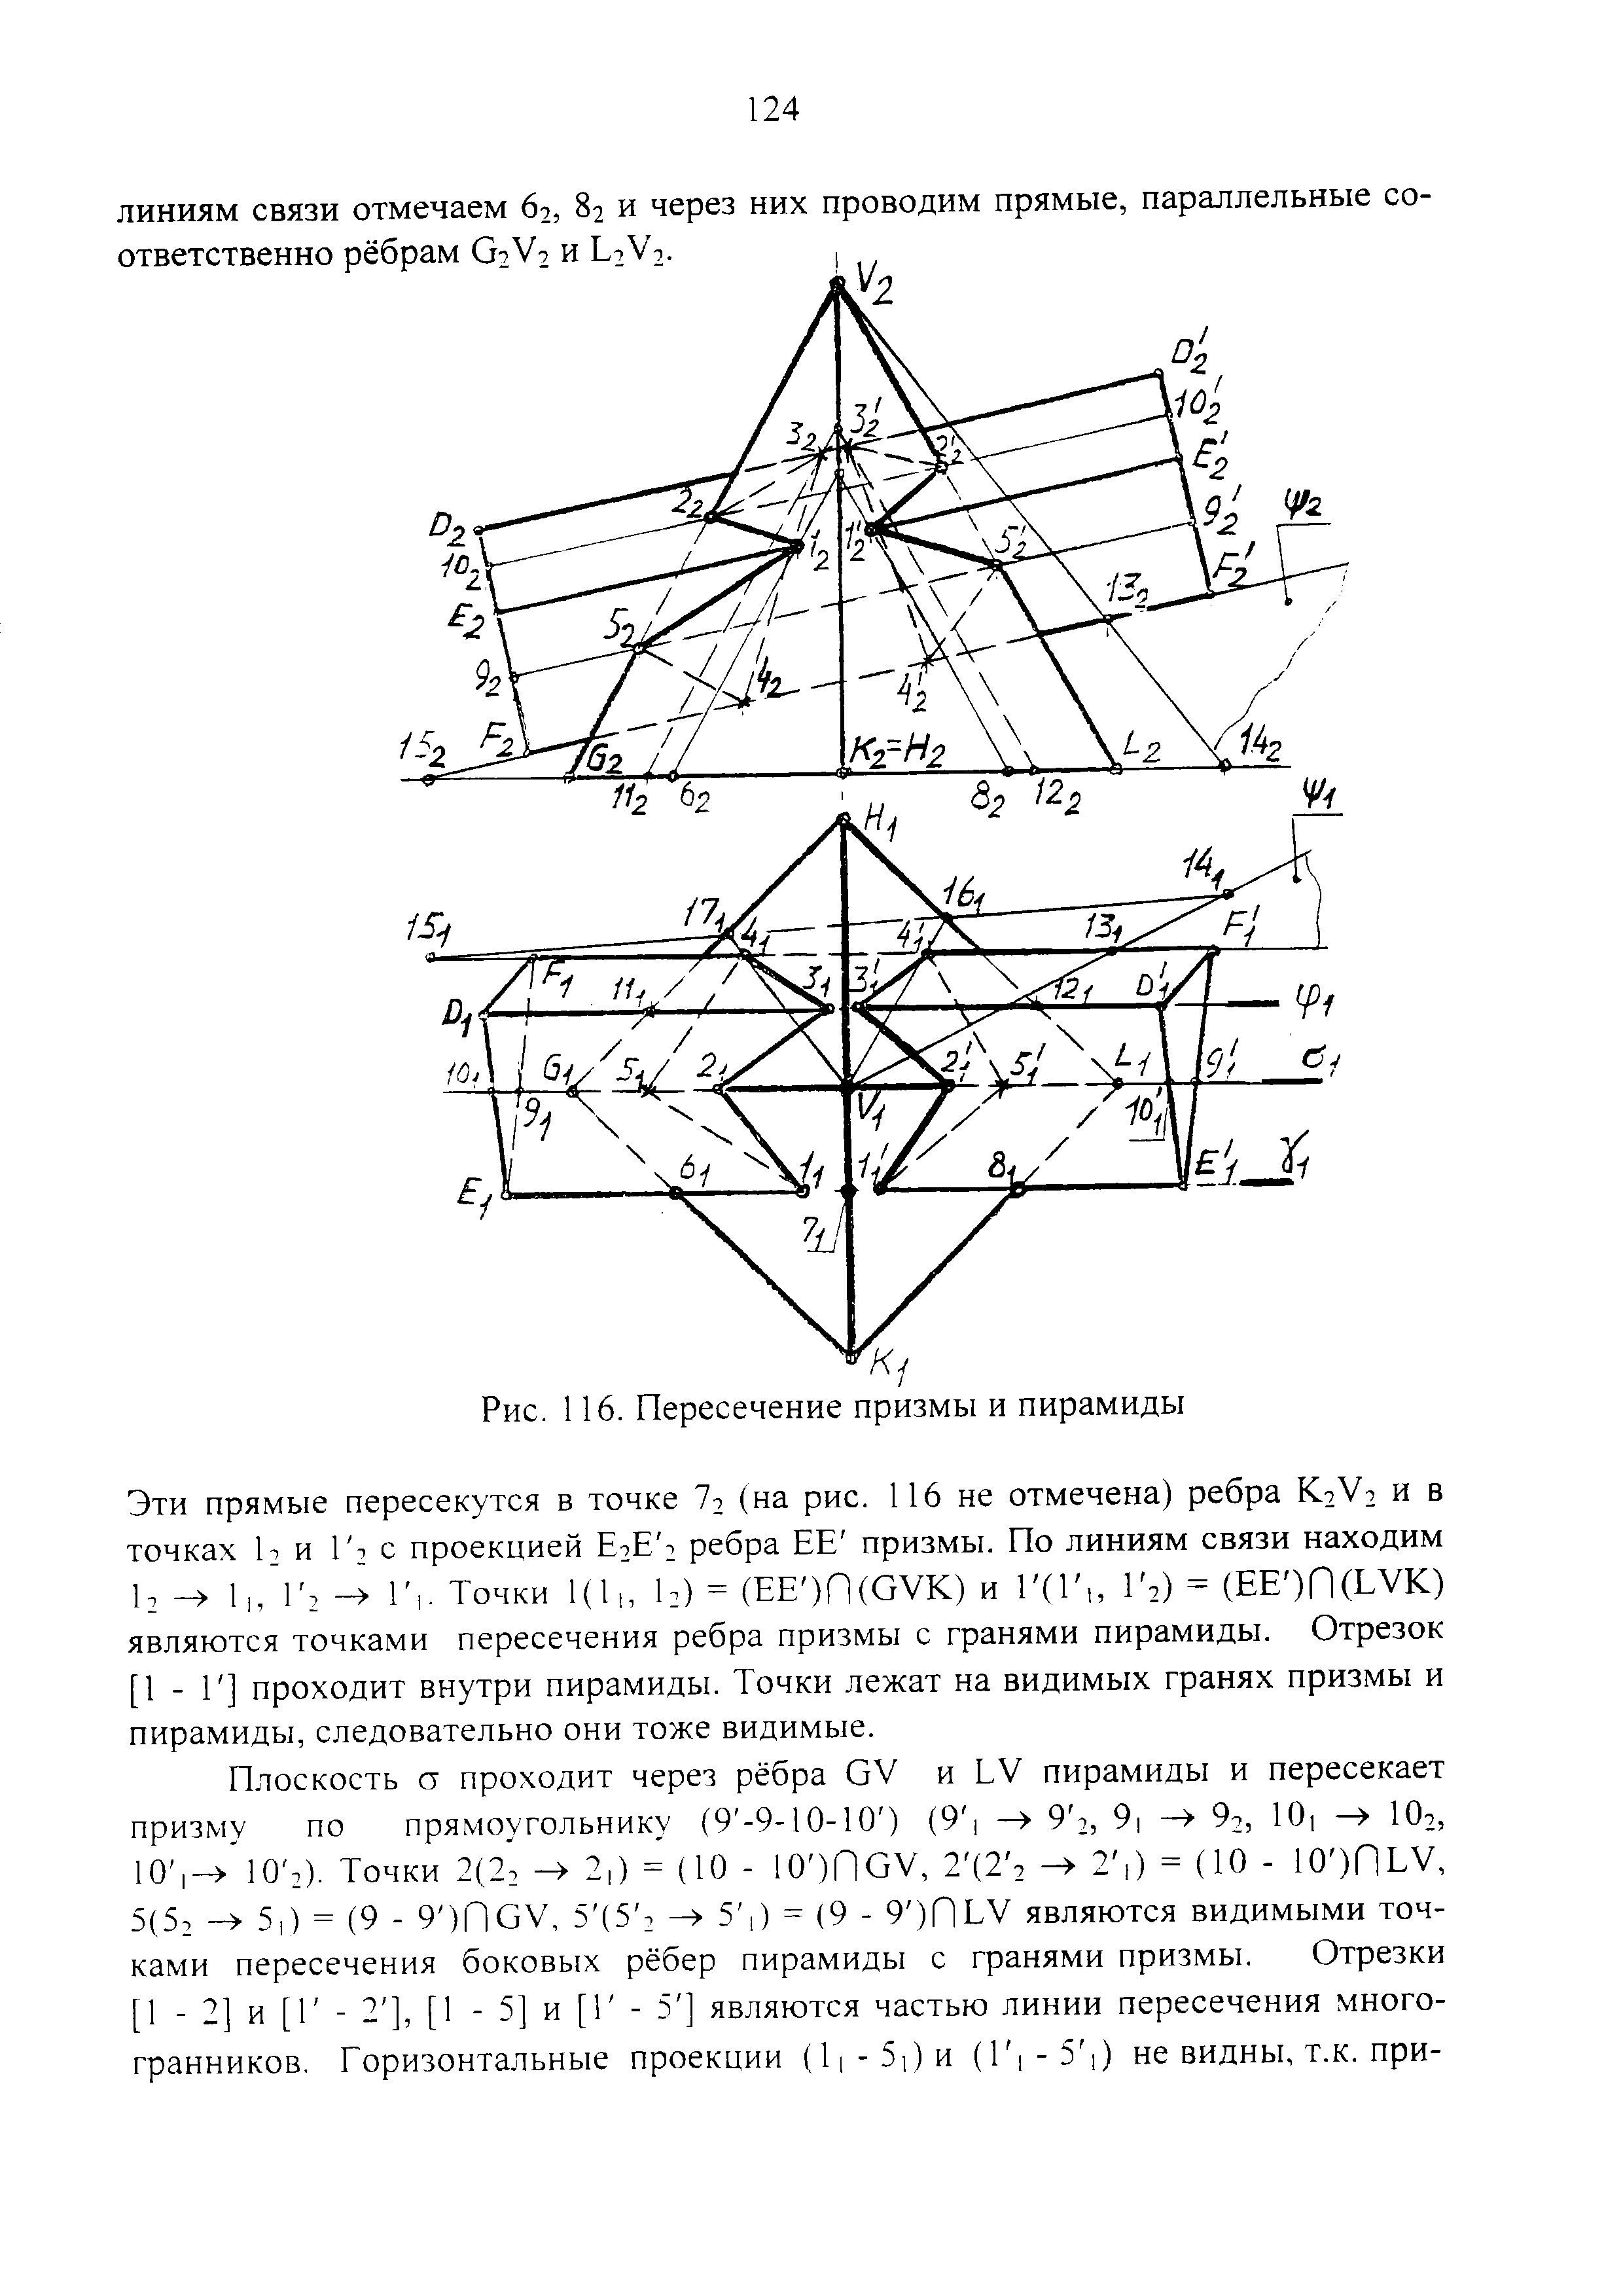 Рис. 116. Пересечение призмы и пирамиды
